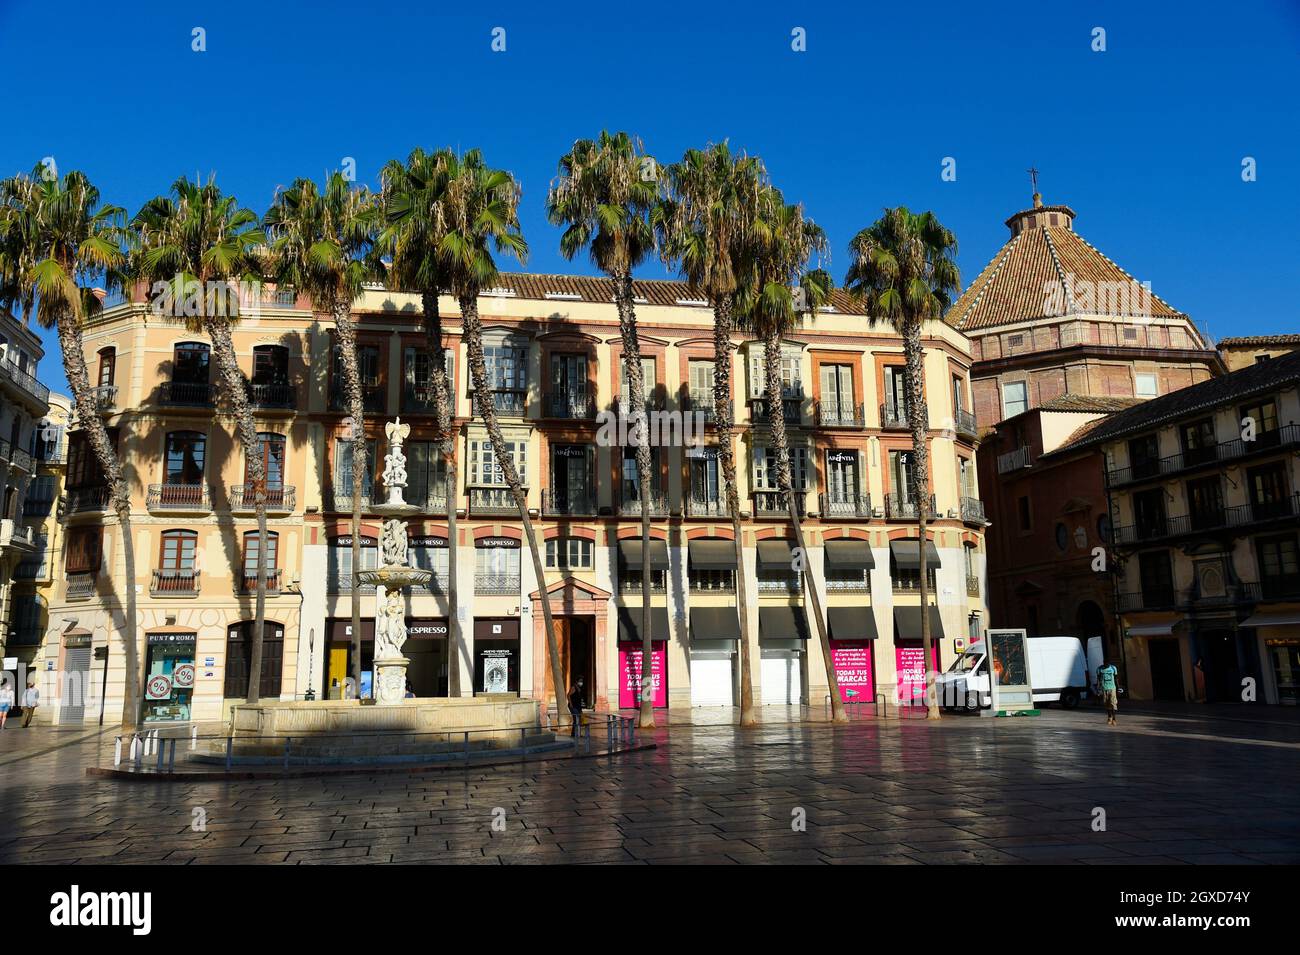 Plaza de la Constitution, Constitution square, Malaga, Andalusia,Spain. Stock Photo